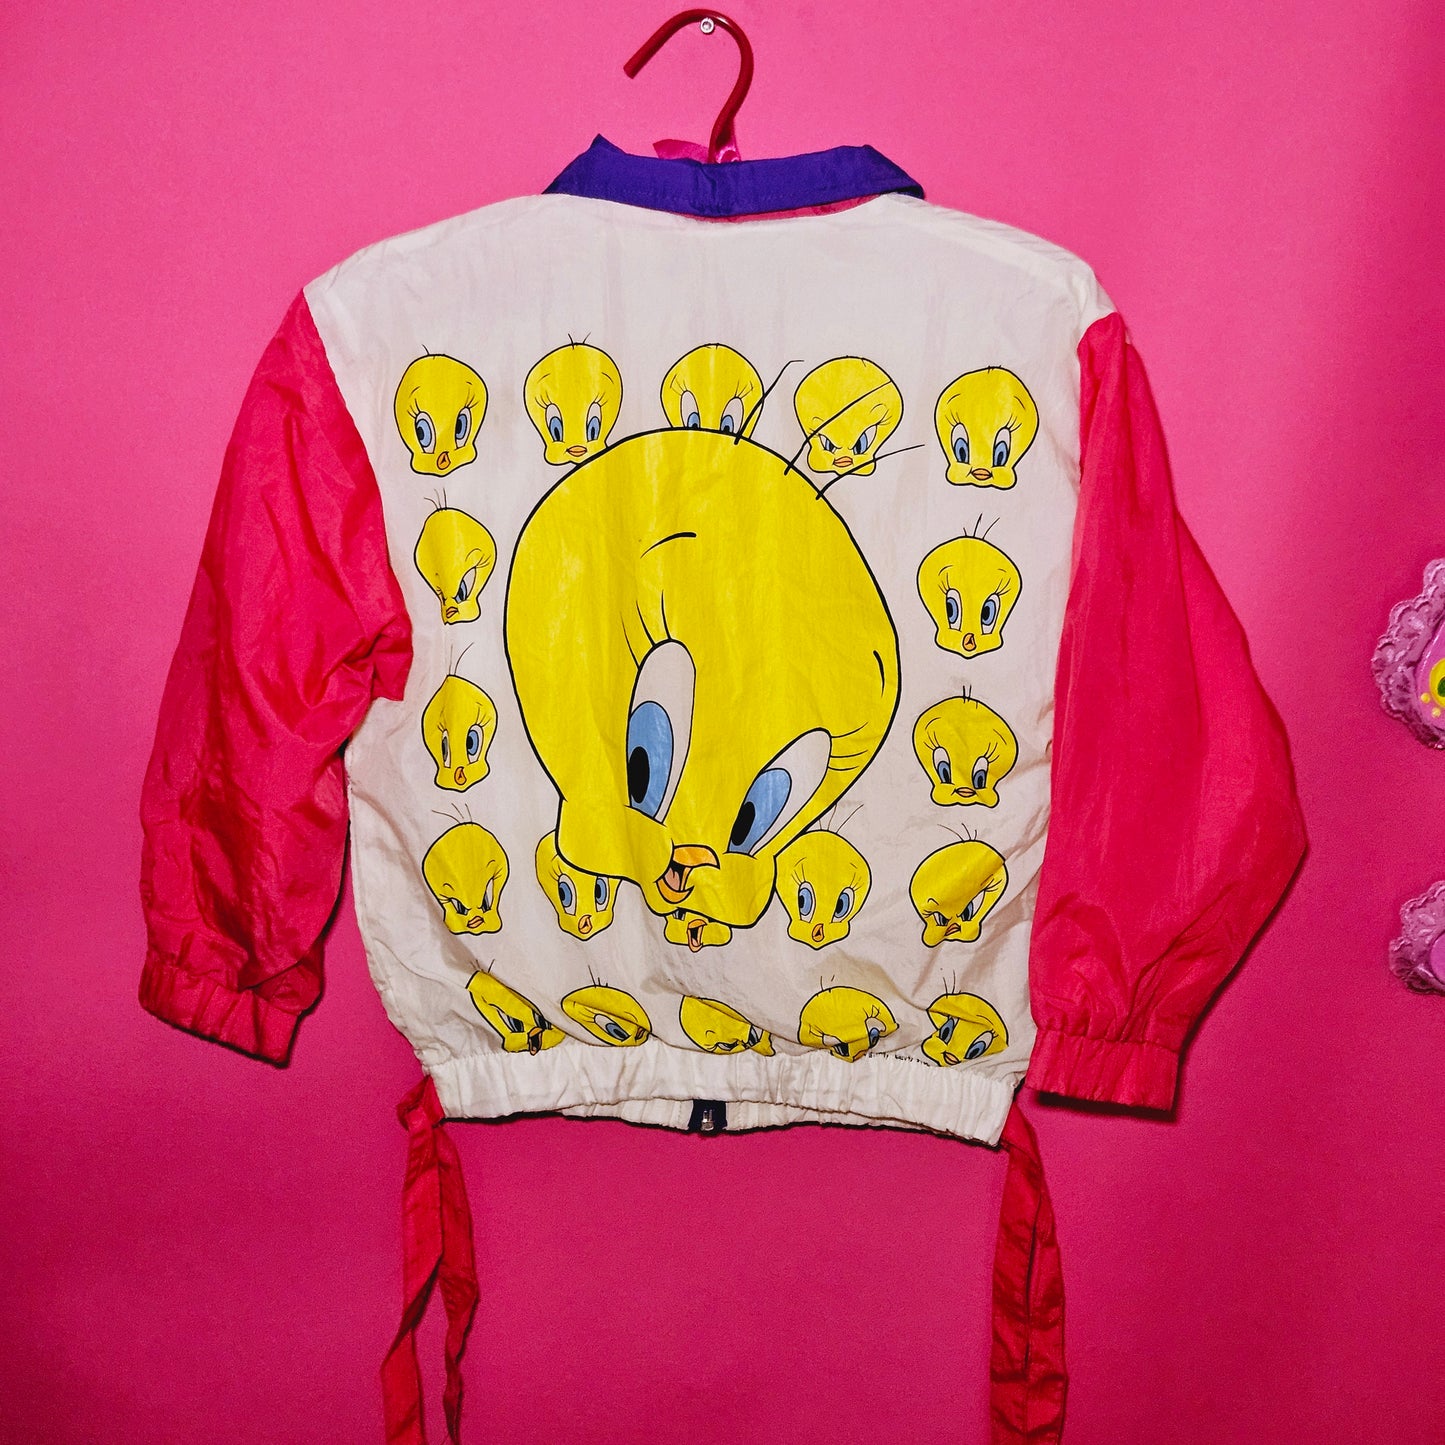 1992 Tweety Windbreaker jacket